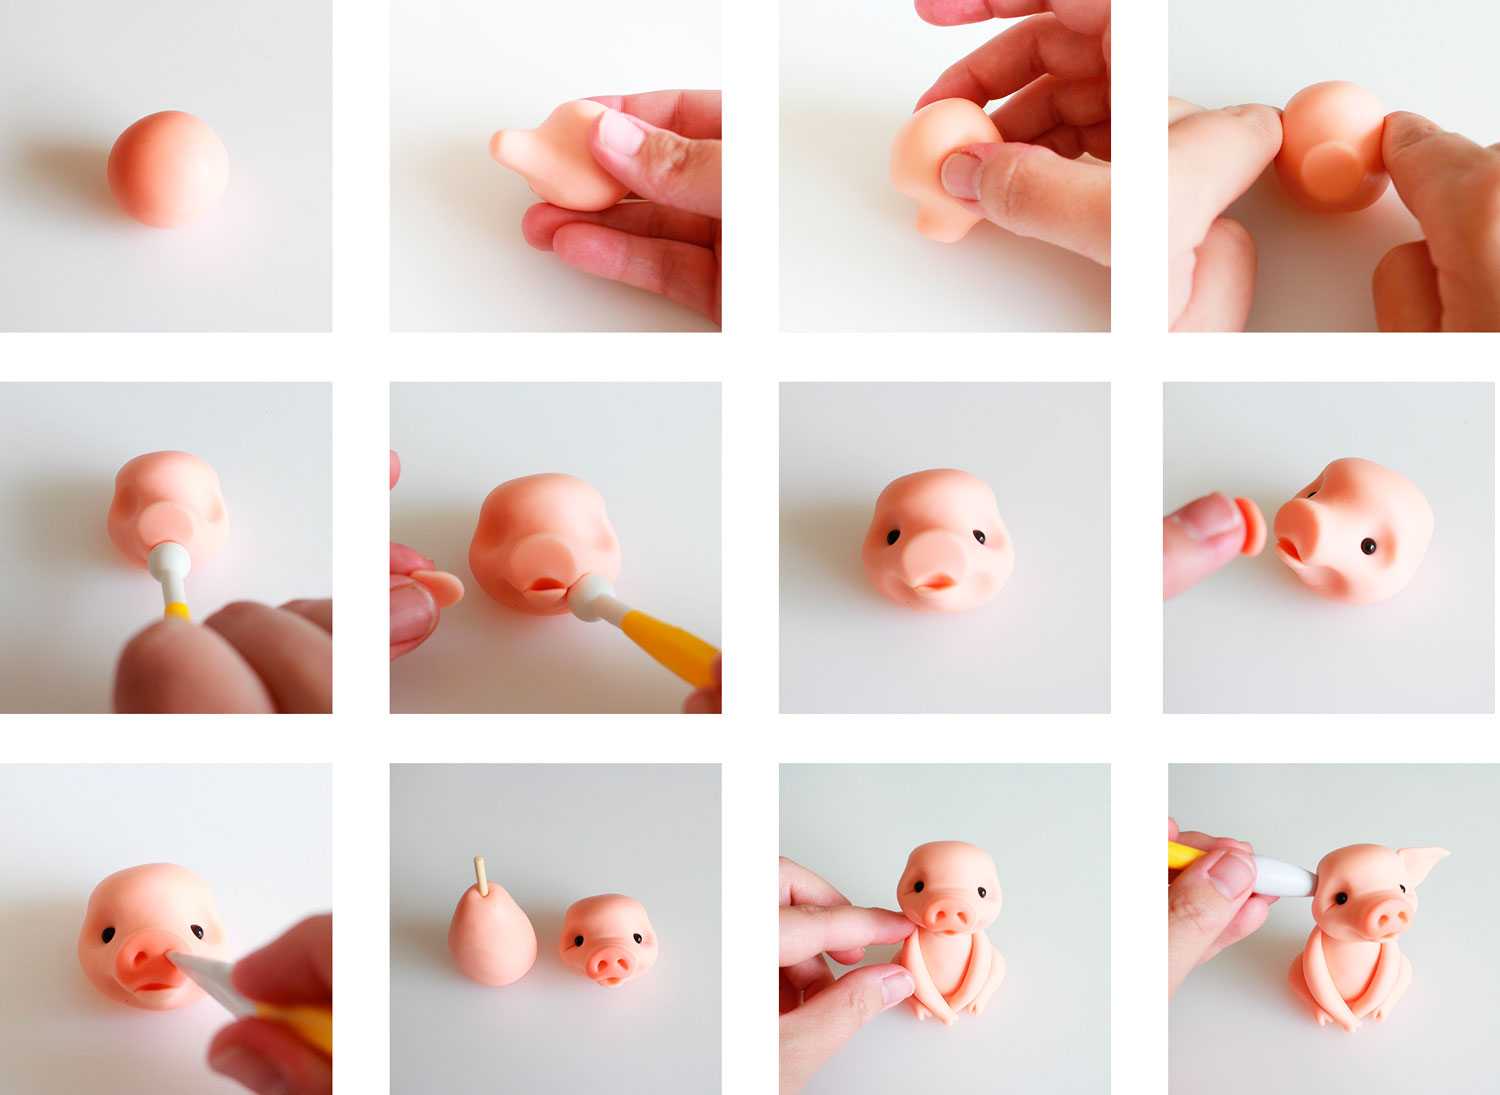 Уроки лепки еды для кукол из полимерной глины и пластилина